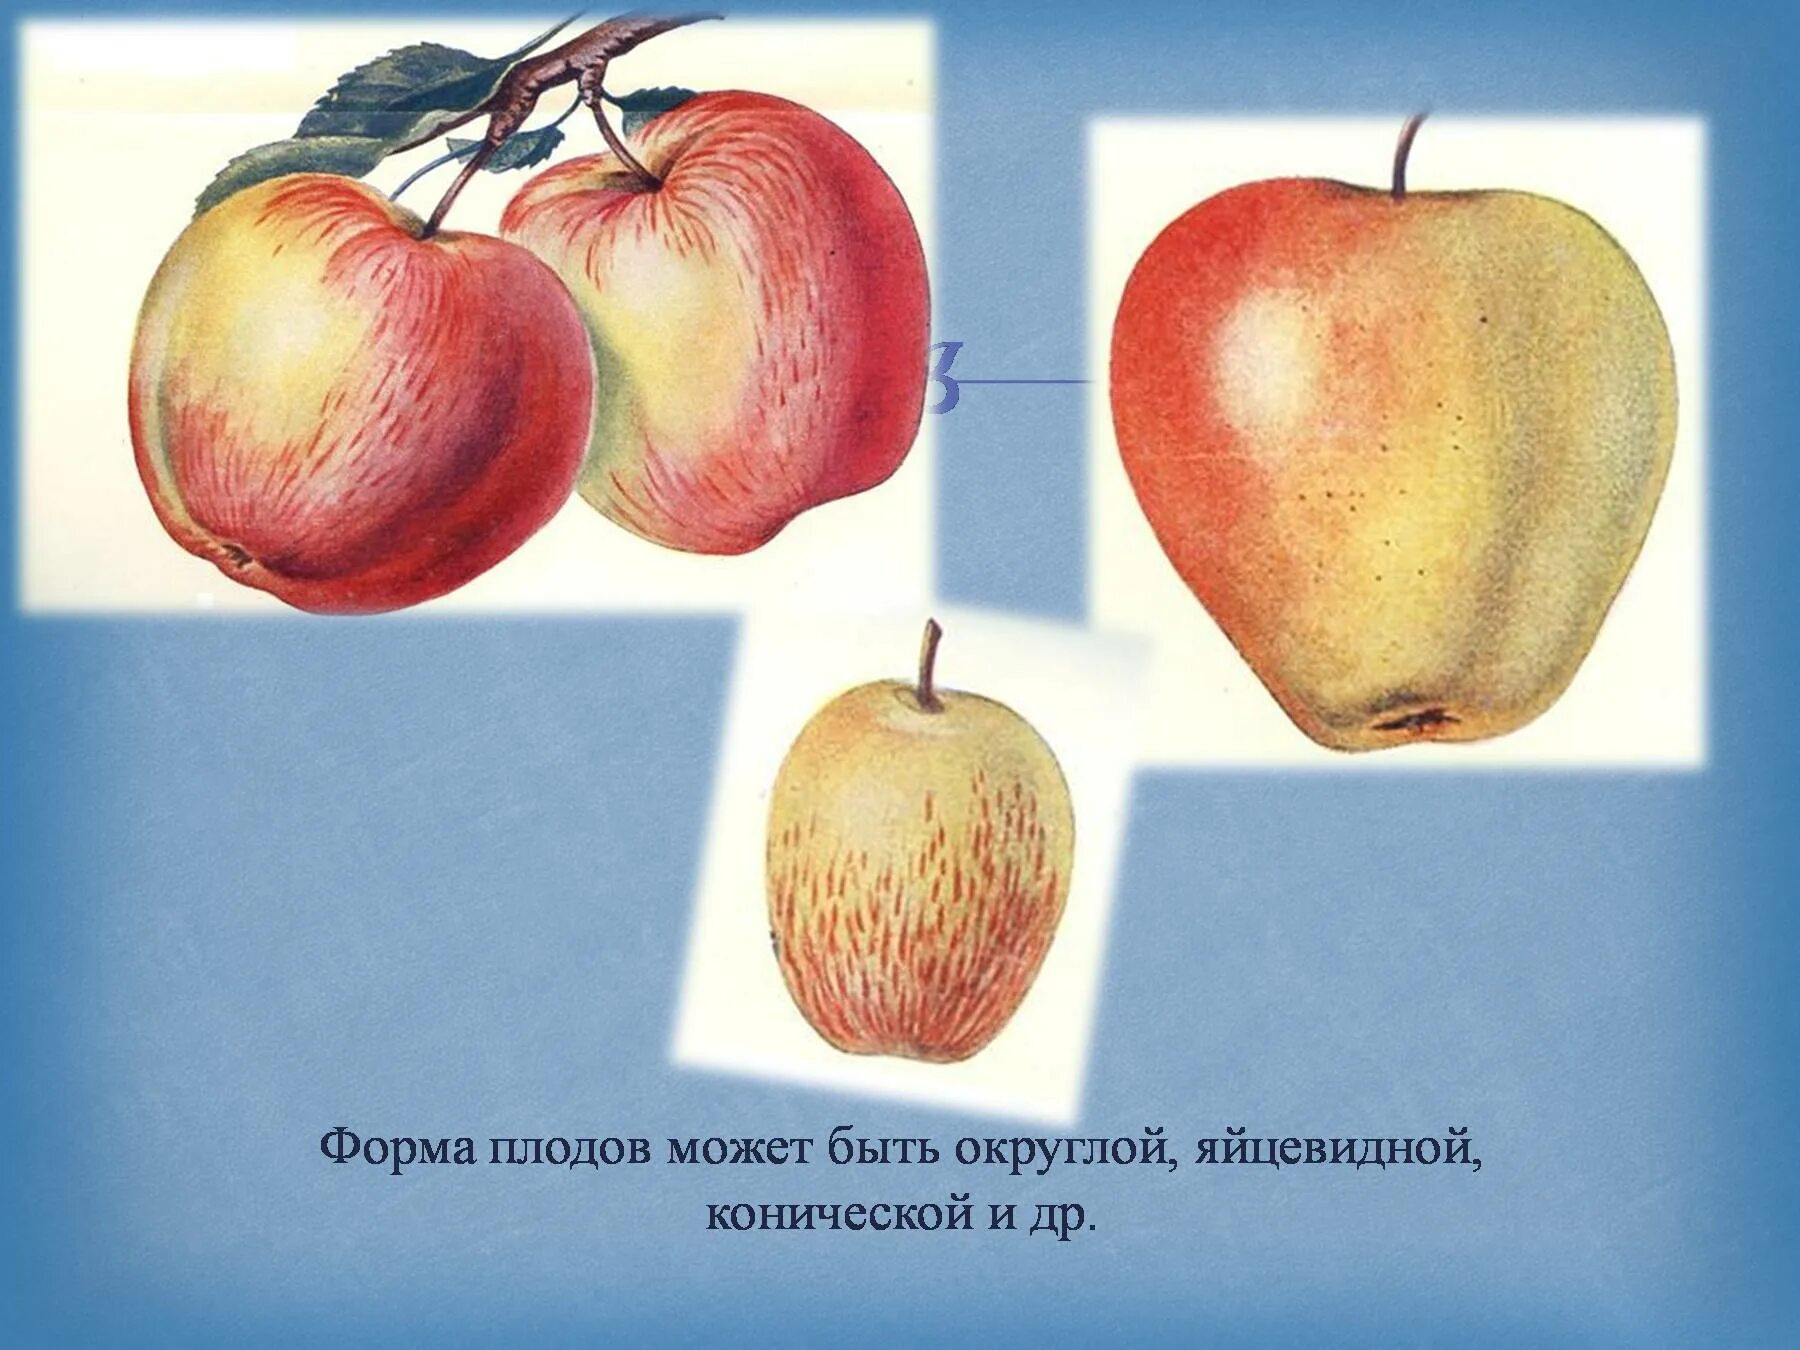 Какую функцию выполняет плод яблони. Плод яблони. Форма плодов яблок. Строение плода яблока. Сорт яблок конической формы.